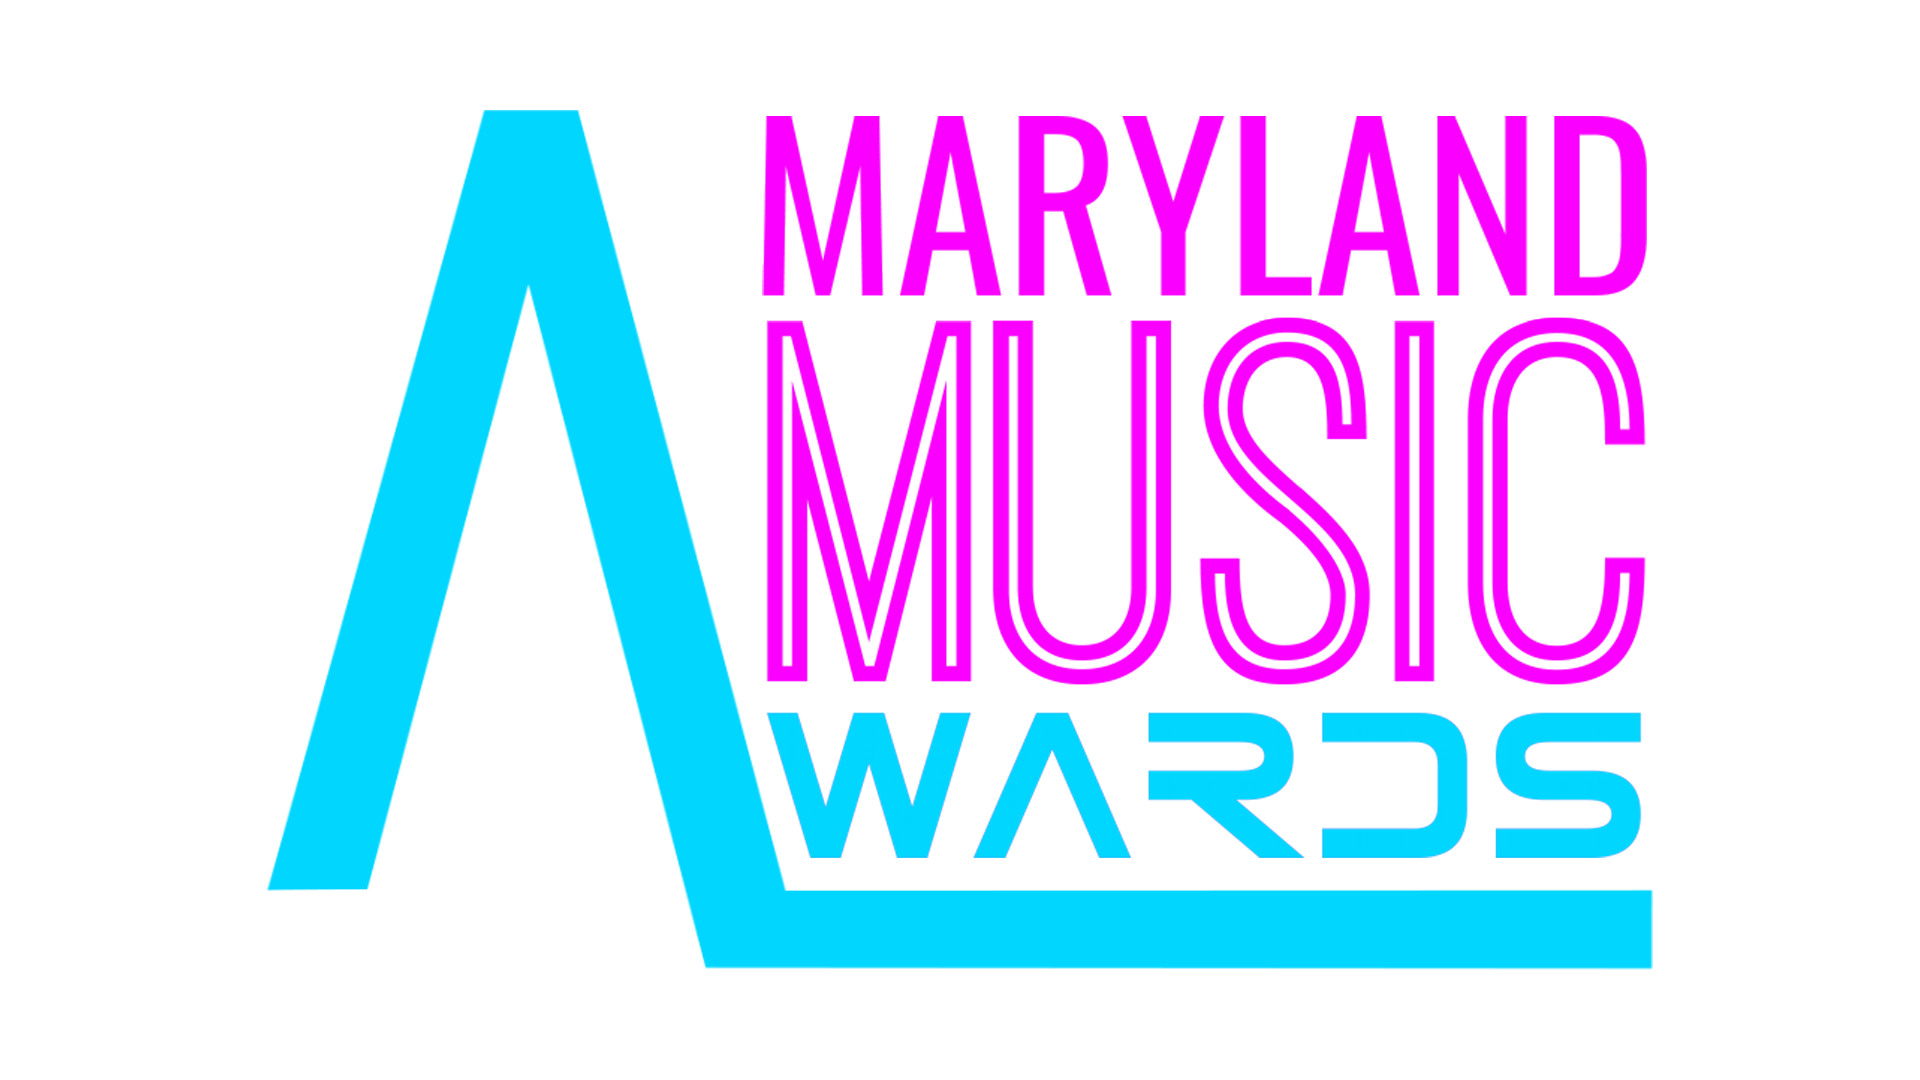 Maryland Music Awards